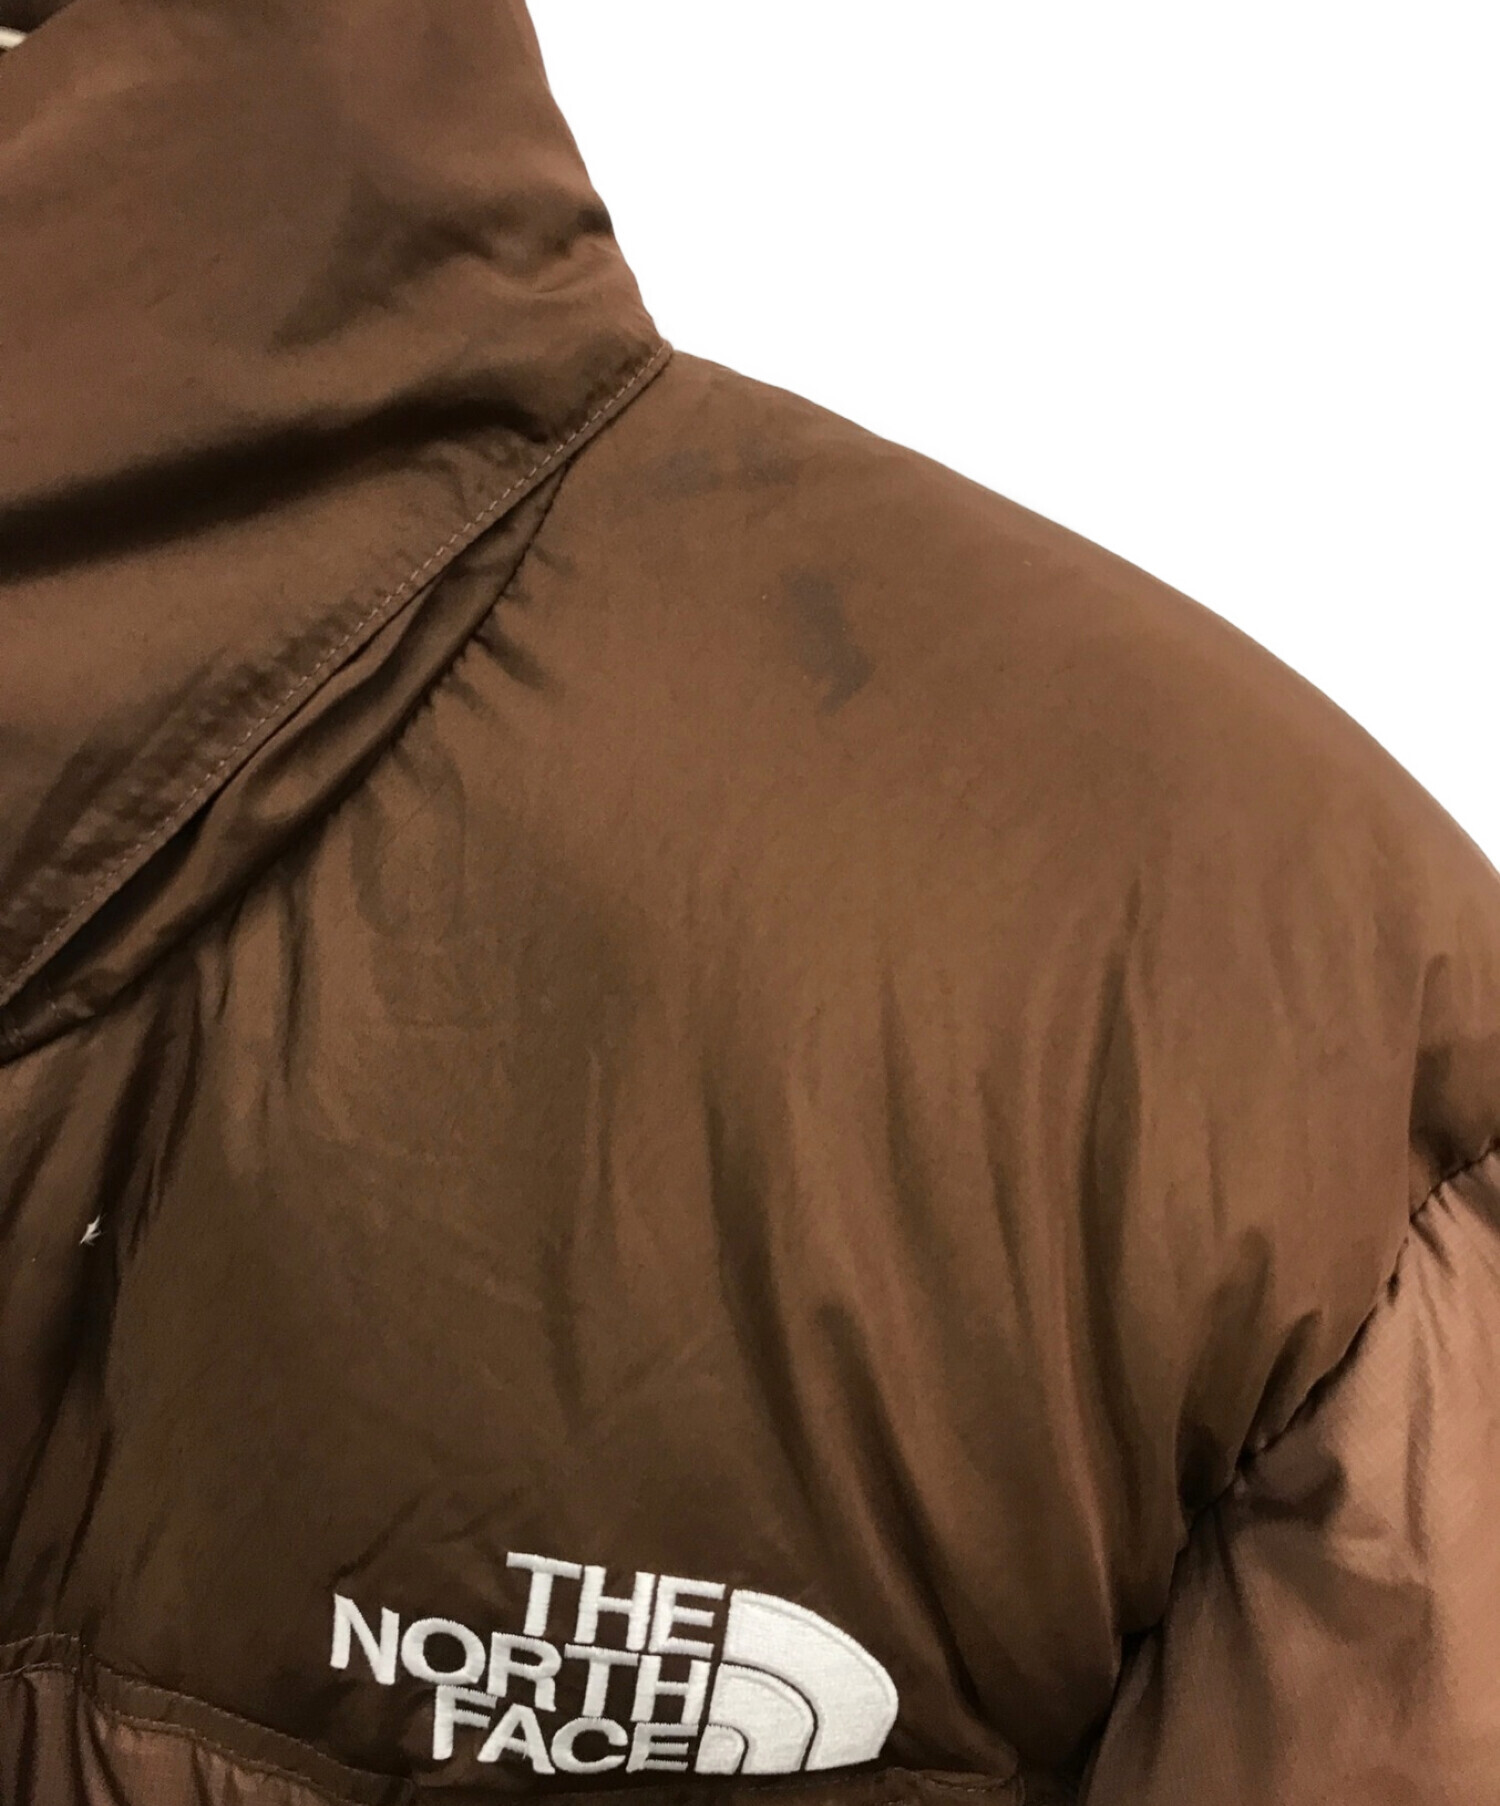 THE NORTH FACE (ザ ノース フェイス) ヌプシジャケット / NUPTSE JACKET / 中綿ジャケット ブラウン（ダーク  オーク） サイズ:XL